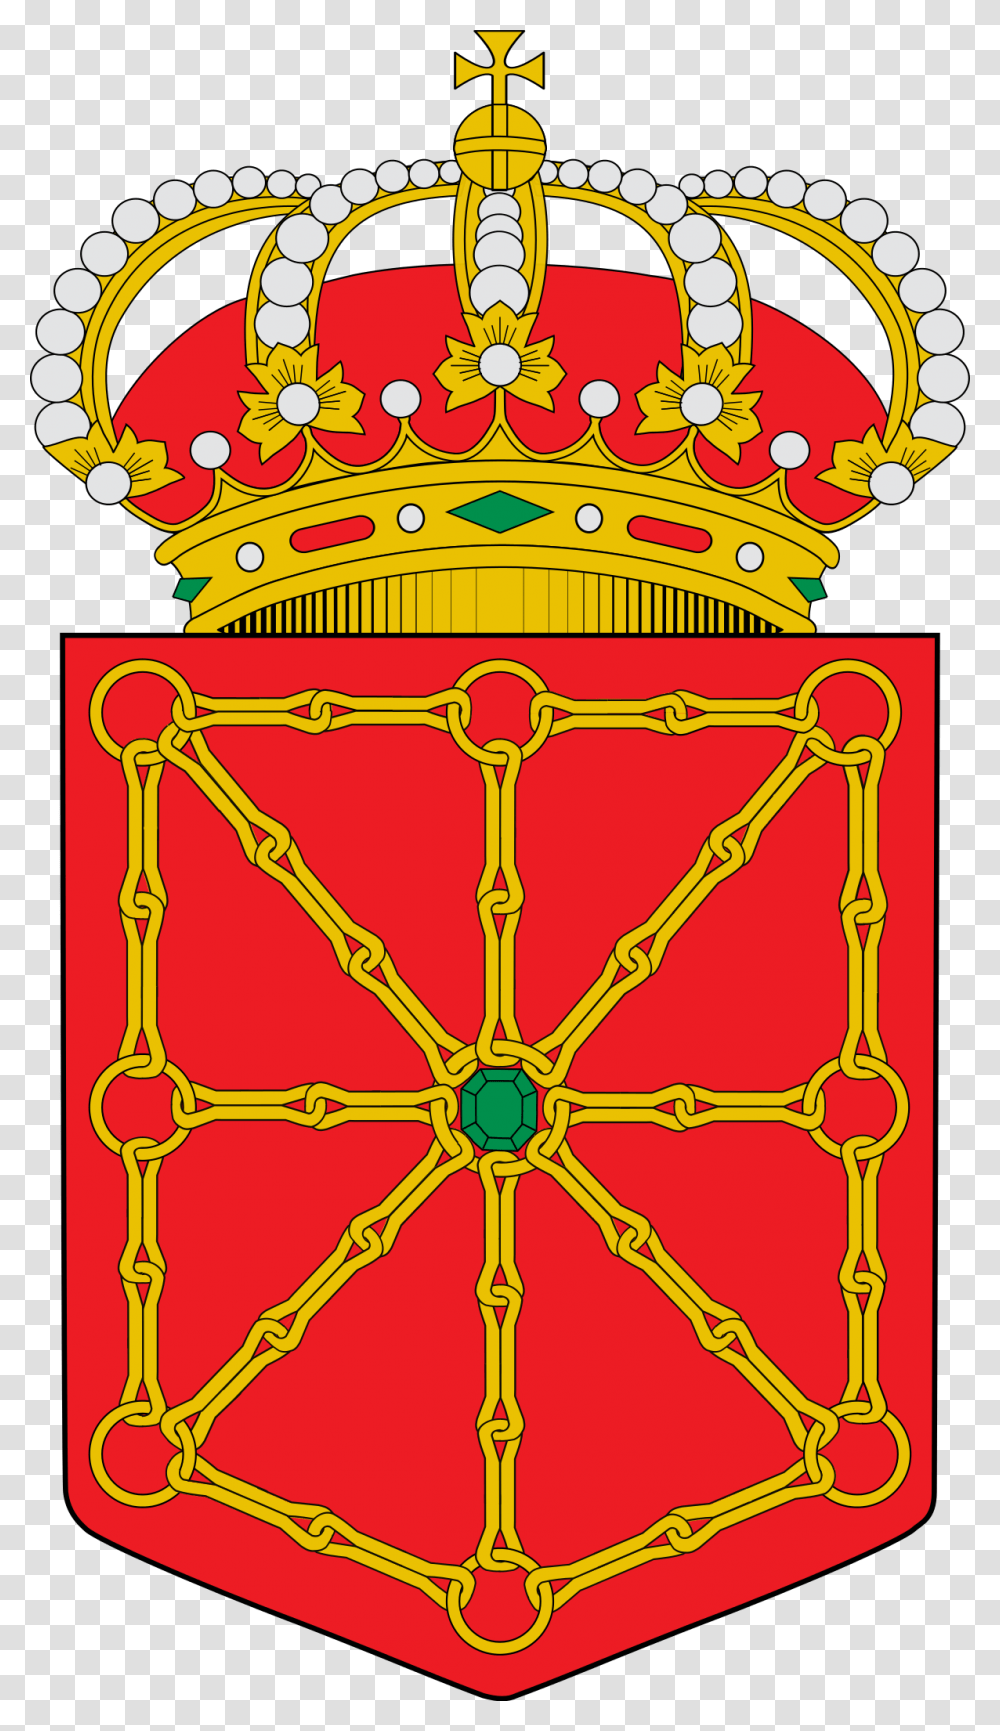 Escudo Bandera De Navarra, Ornament, Pattern, Accessories, Accessory Transparent Png